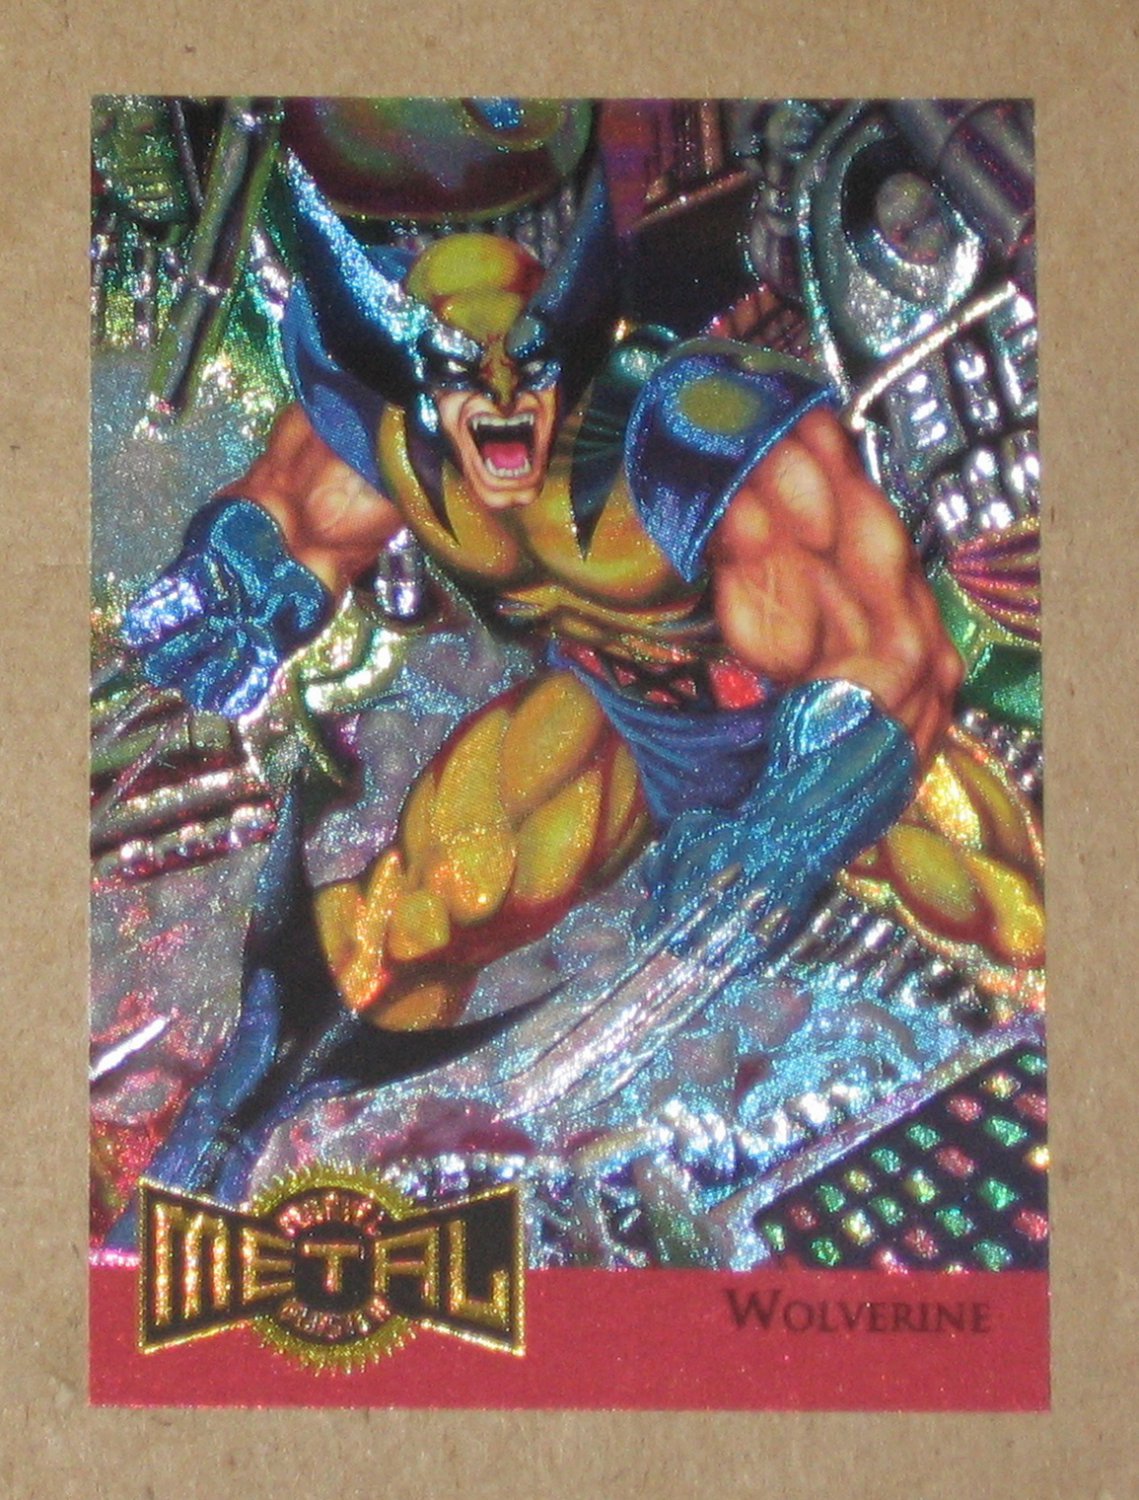 Marvel Metal (Fleer 1995) Metal Blaster Card 18